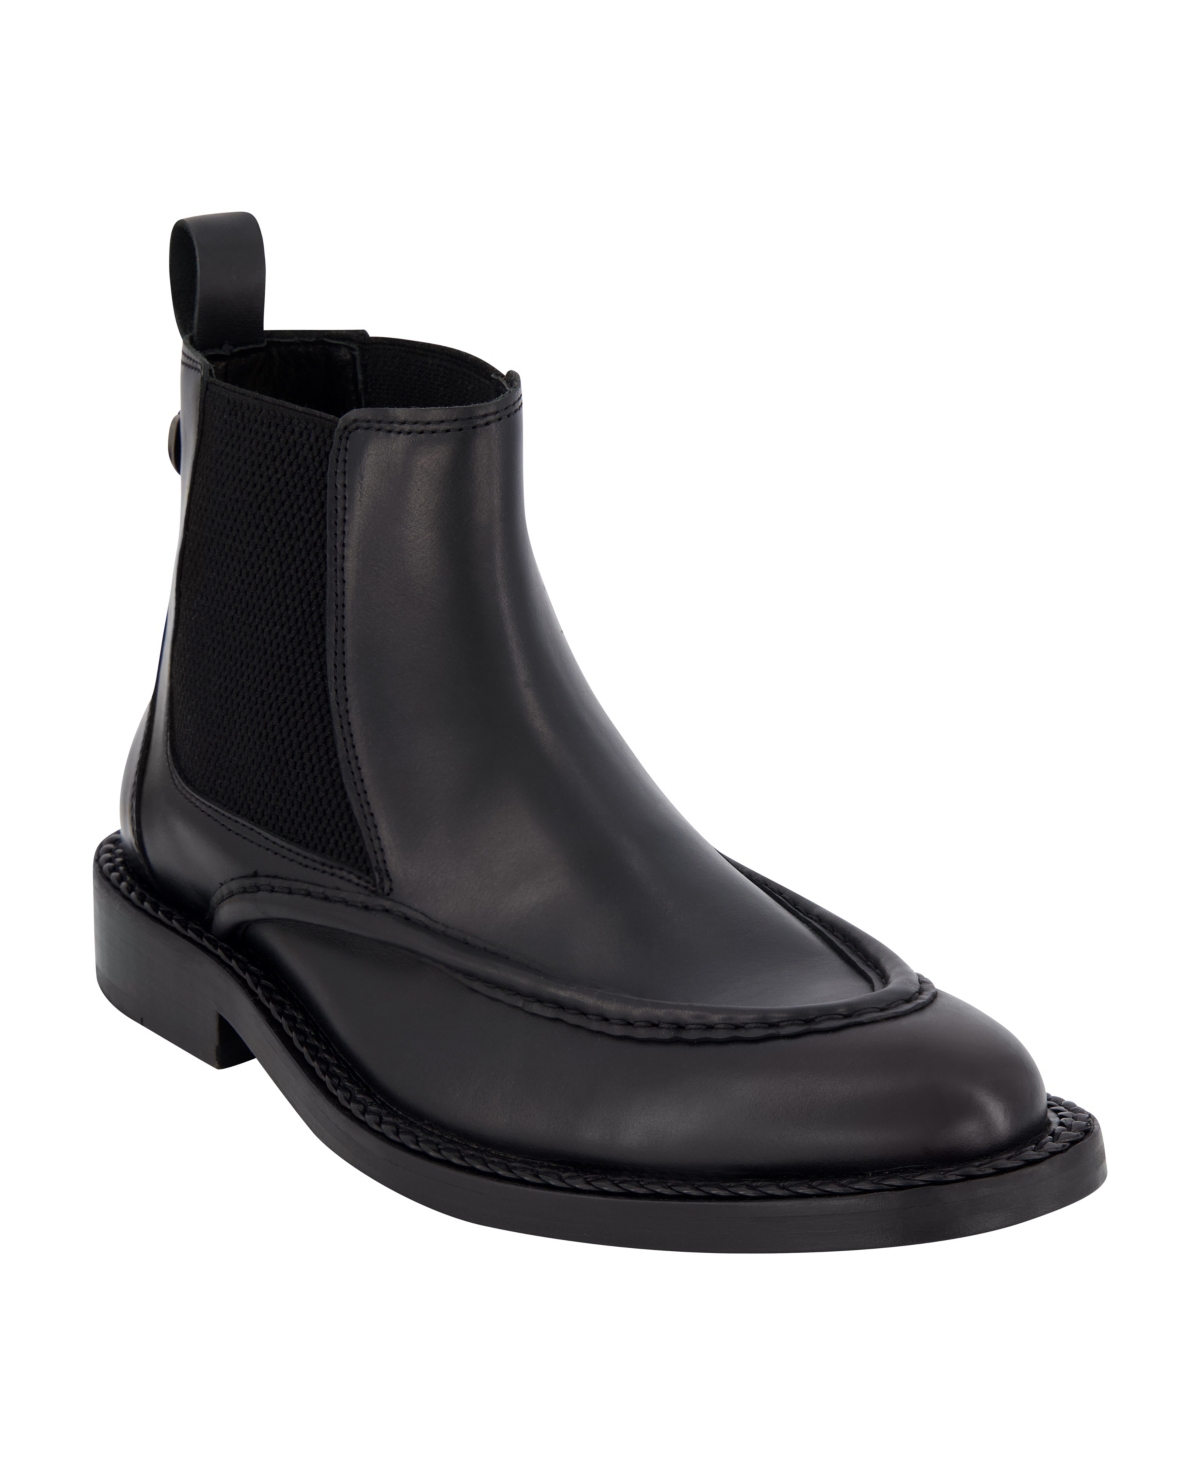 Men's Leather Moc Toe Chelsea Boots - Black